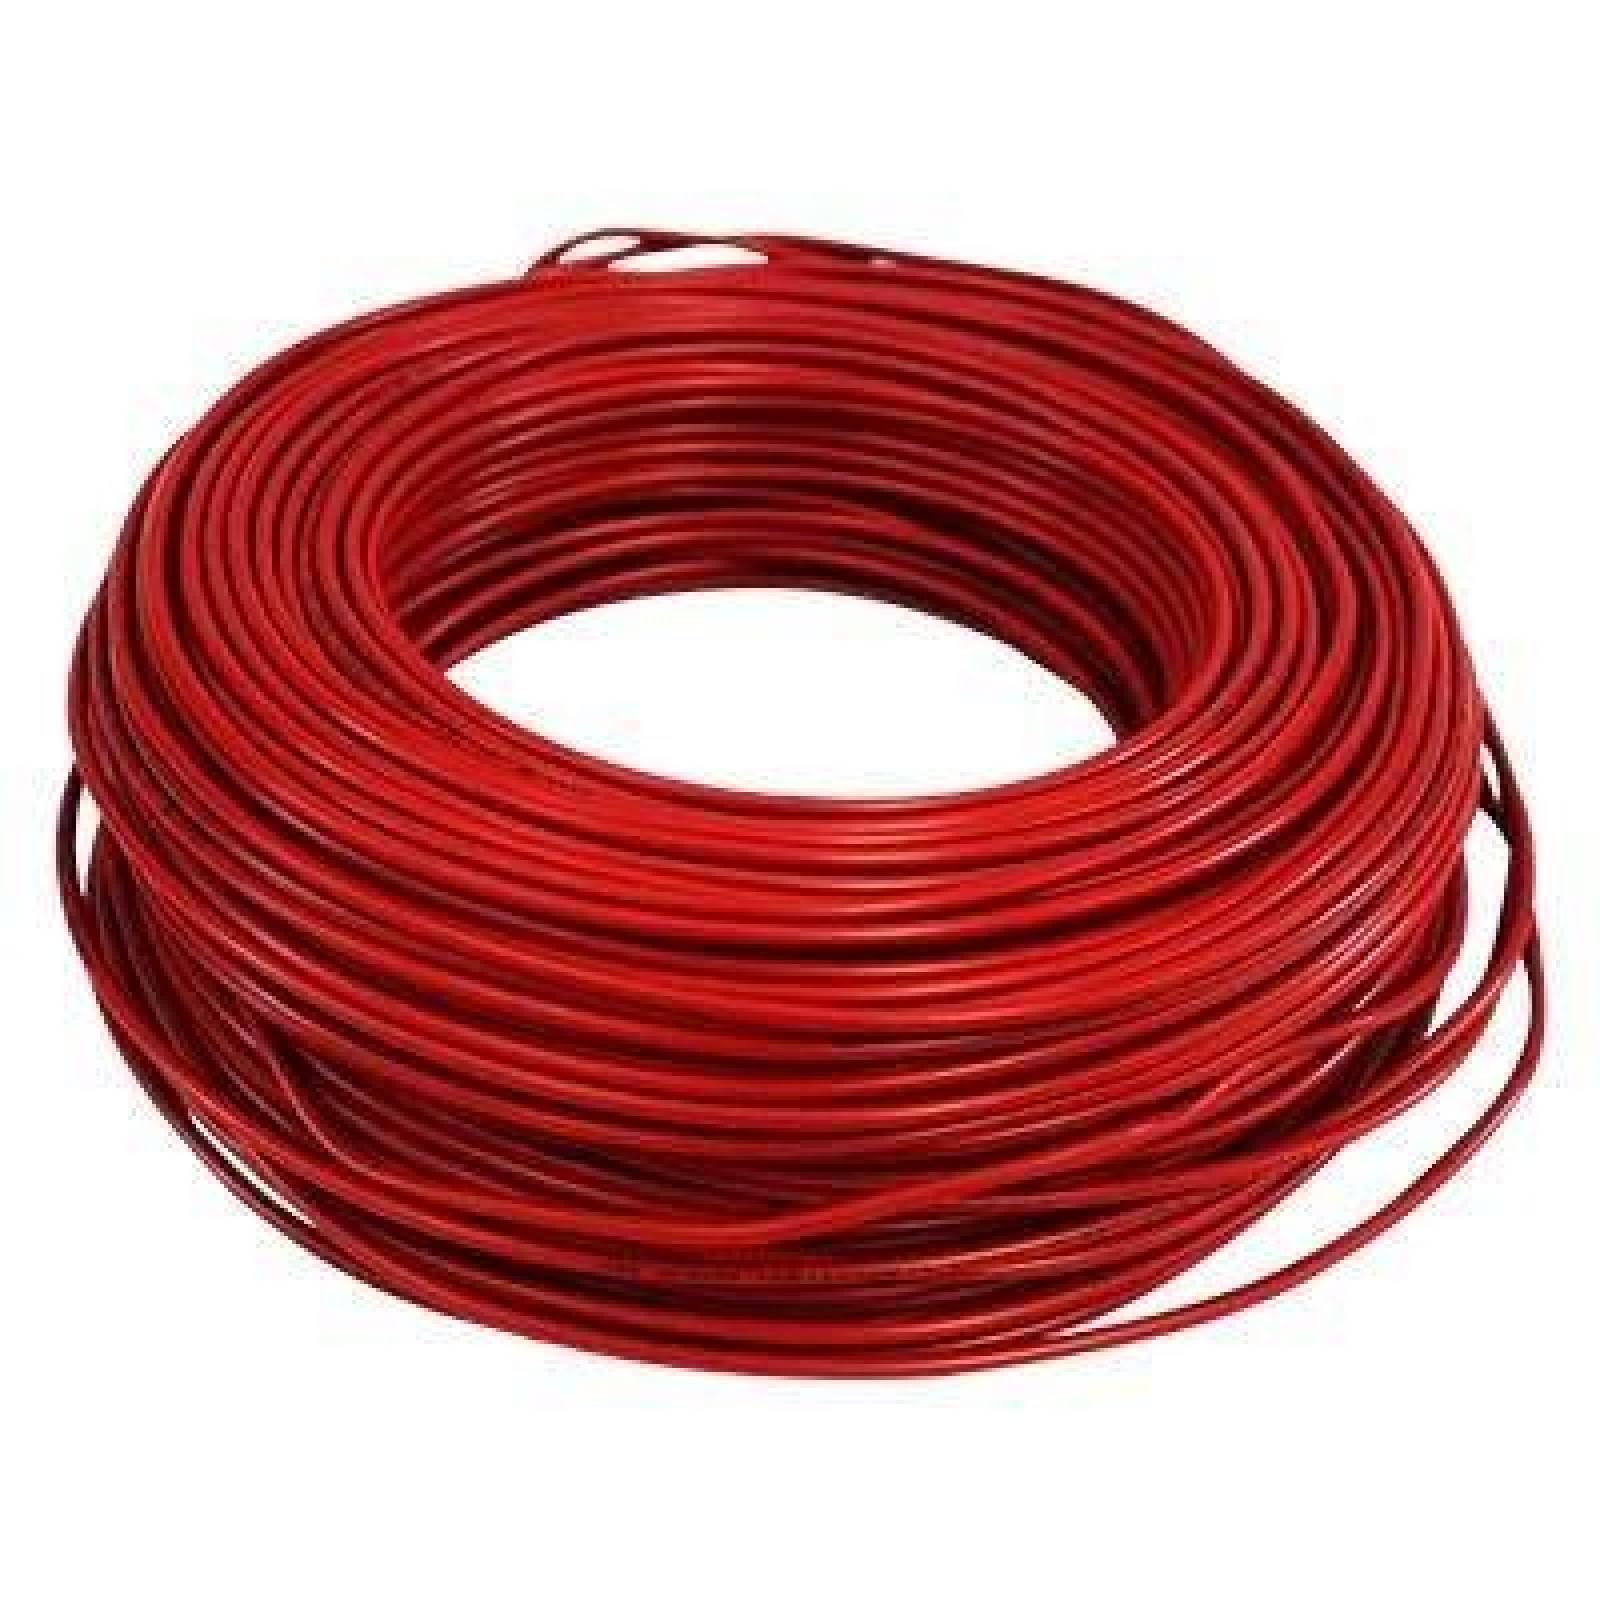 Cable Electrico Iusa Rojo Thwc 10 5032